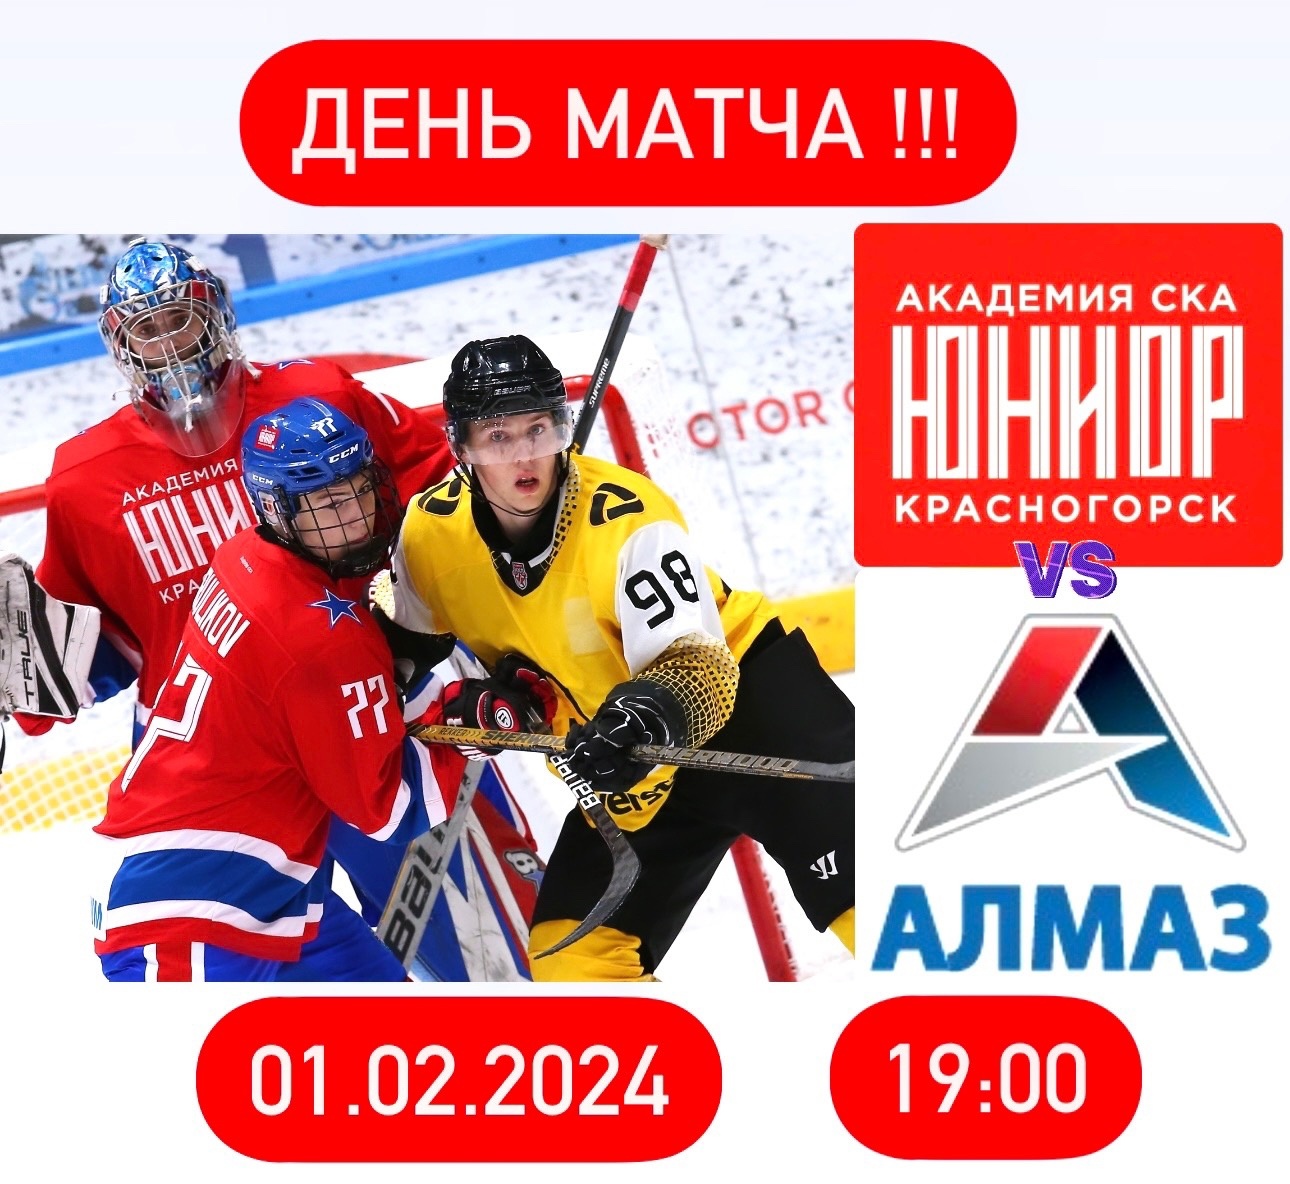 Матч между командами «Академия СКА-Юриор» vs. «Алмаз»